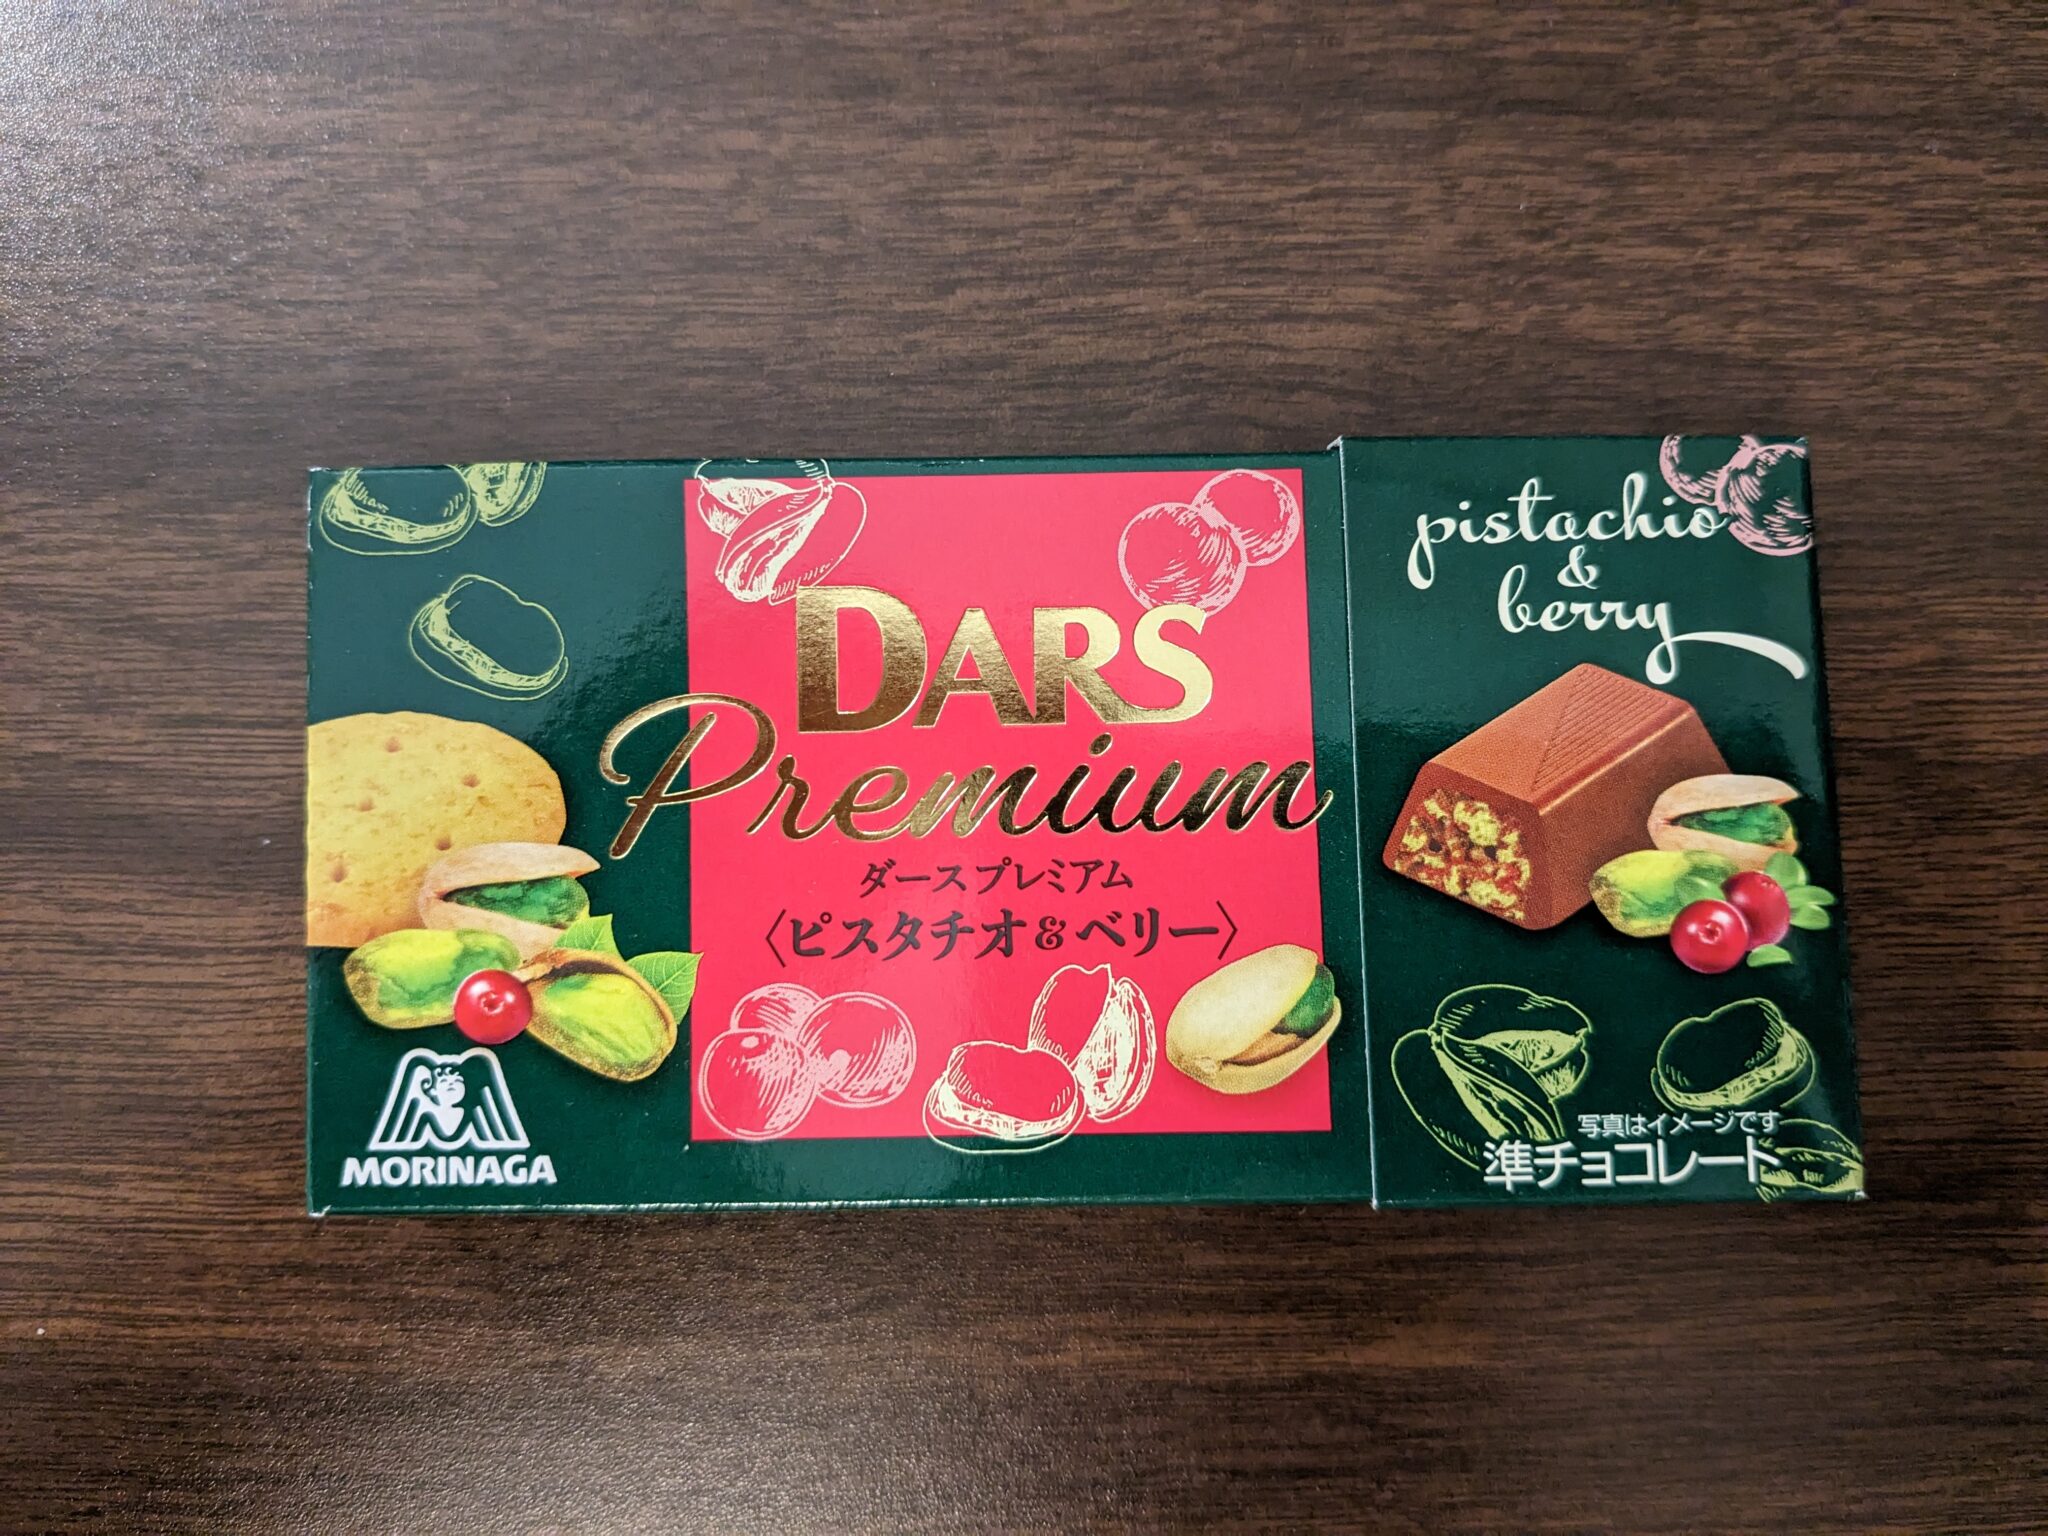 DARS Chocolate – Premium Pistachio and Cranberry